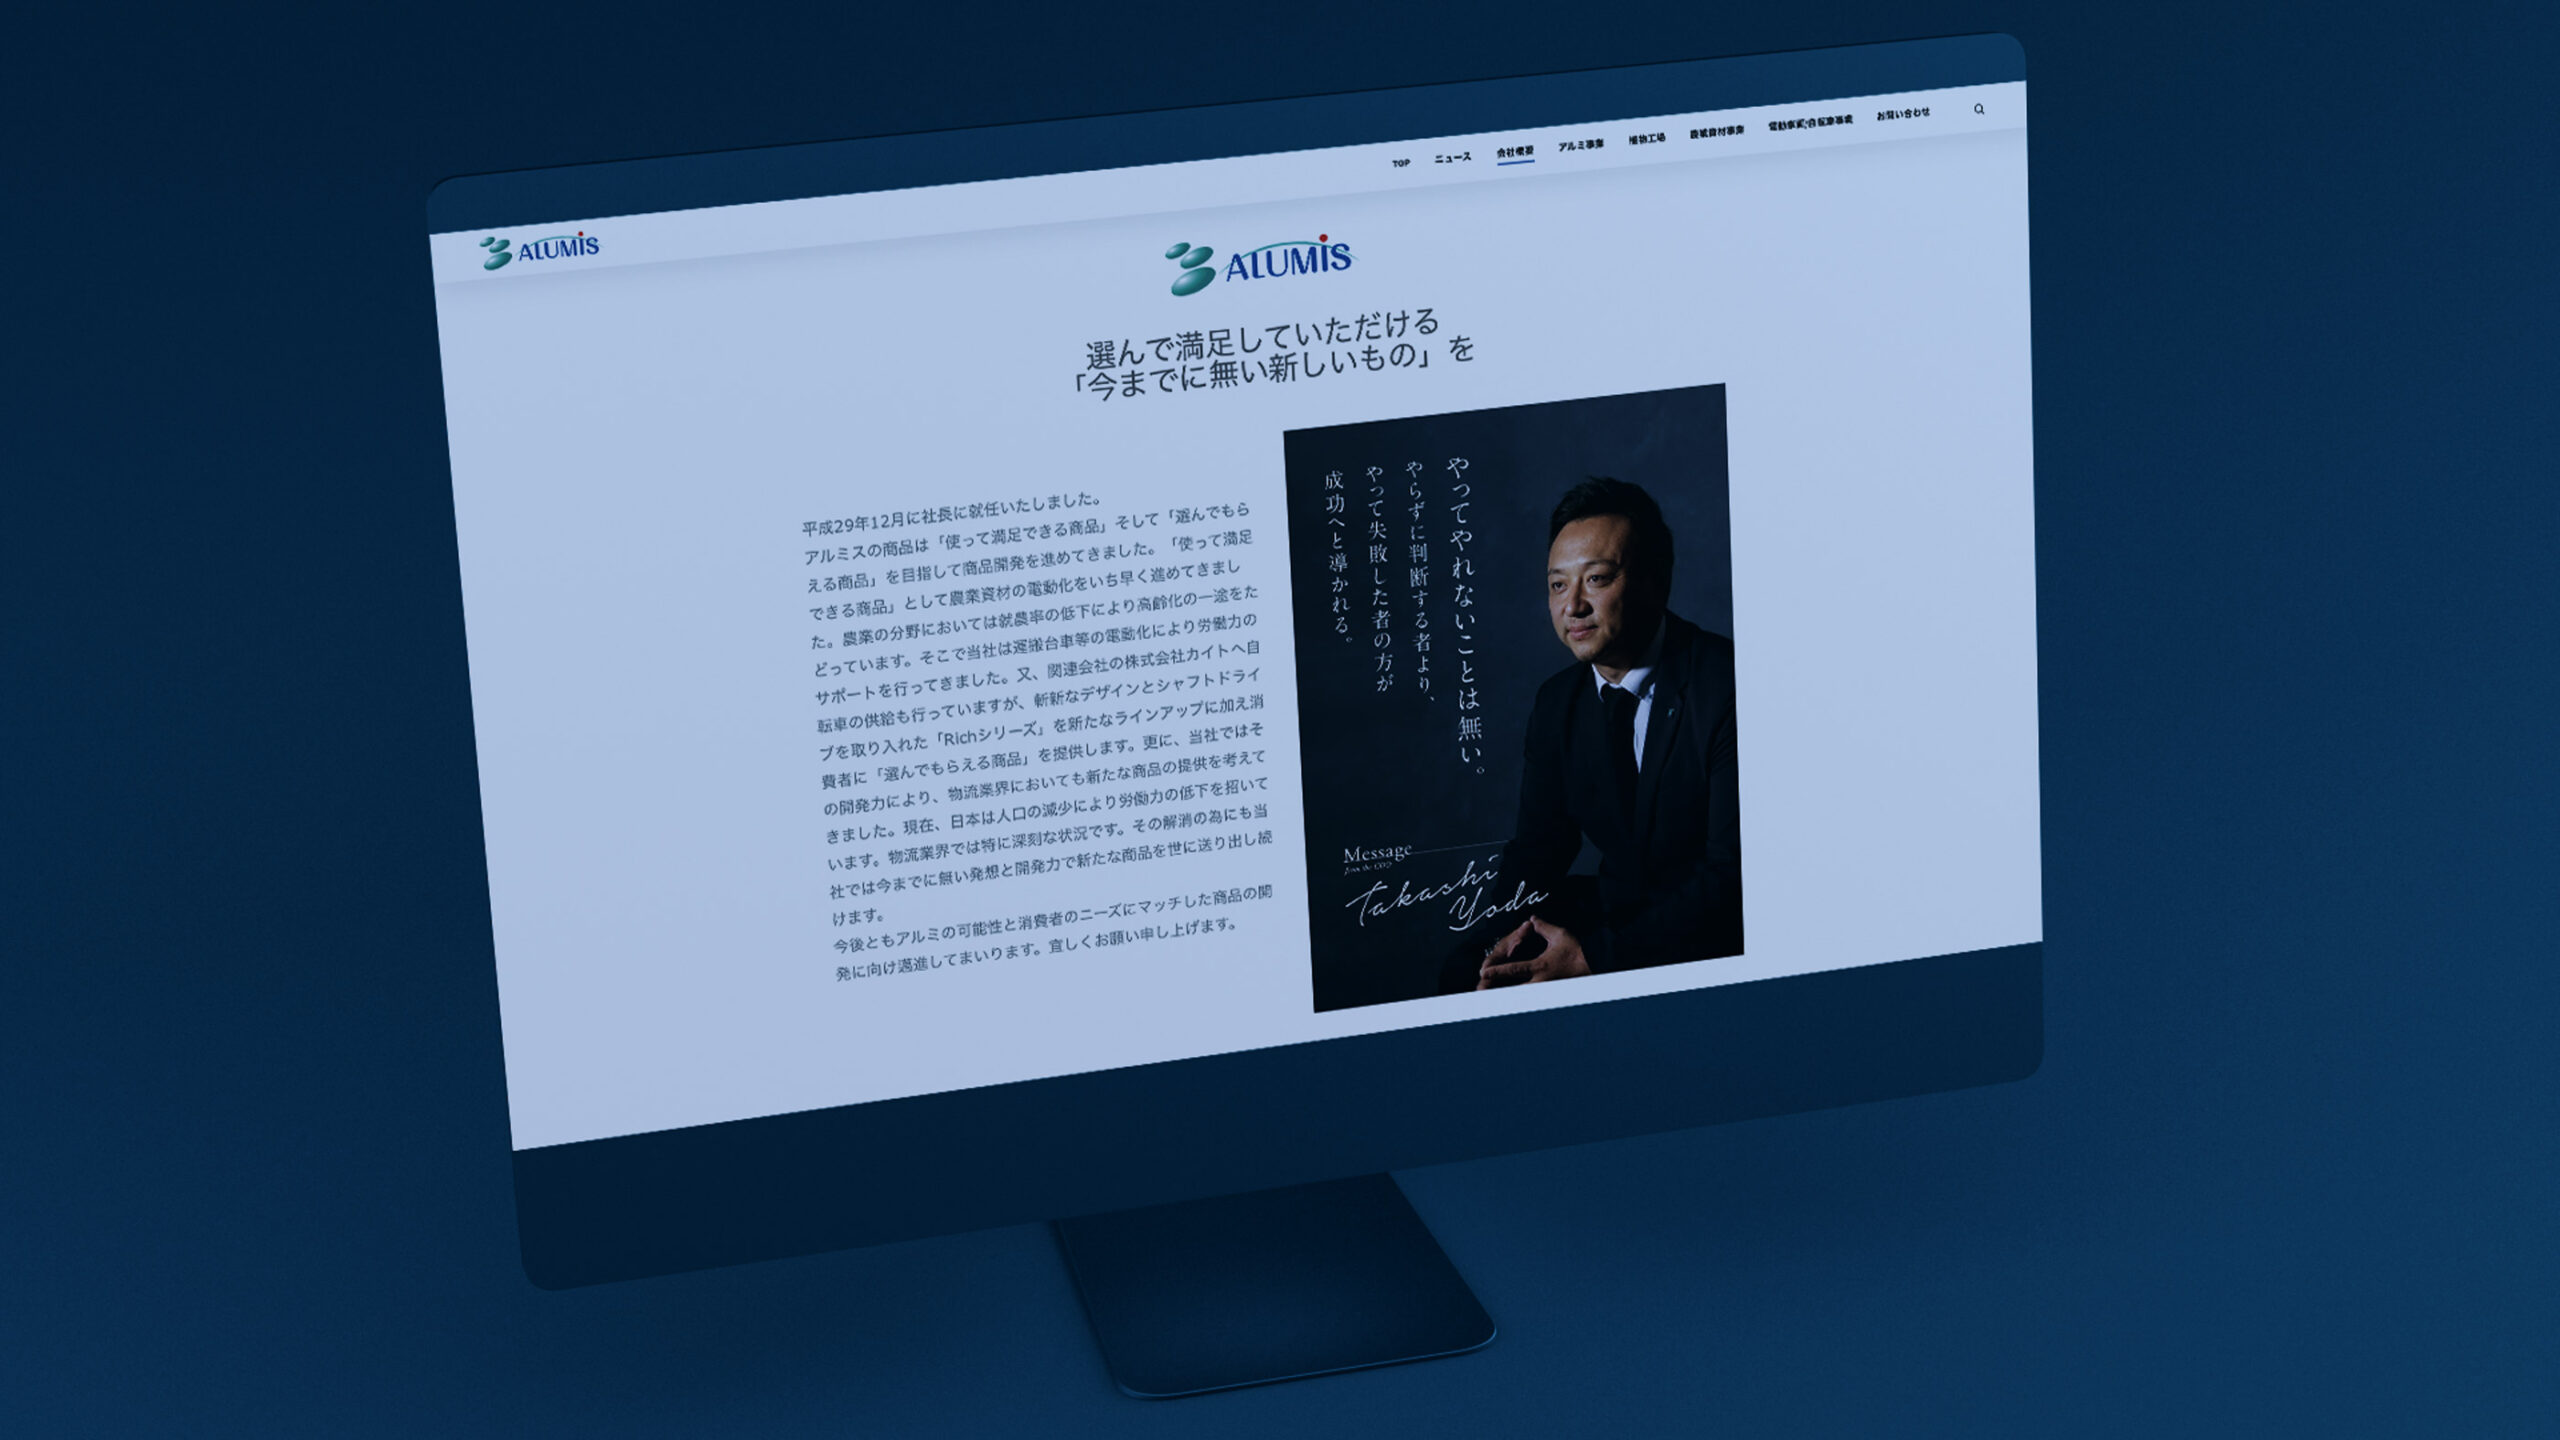 株式会社アルミス佐賀本社の会社概要ページウェブデザインがデスクトップパソコンに表示されているスティルライフグラフィック写真